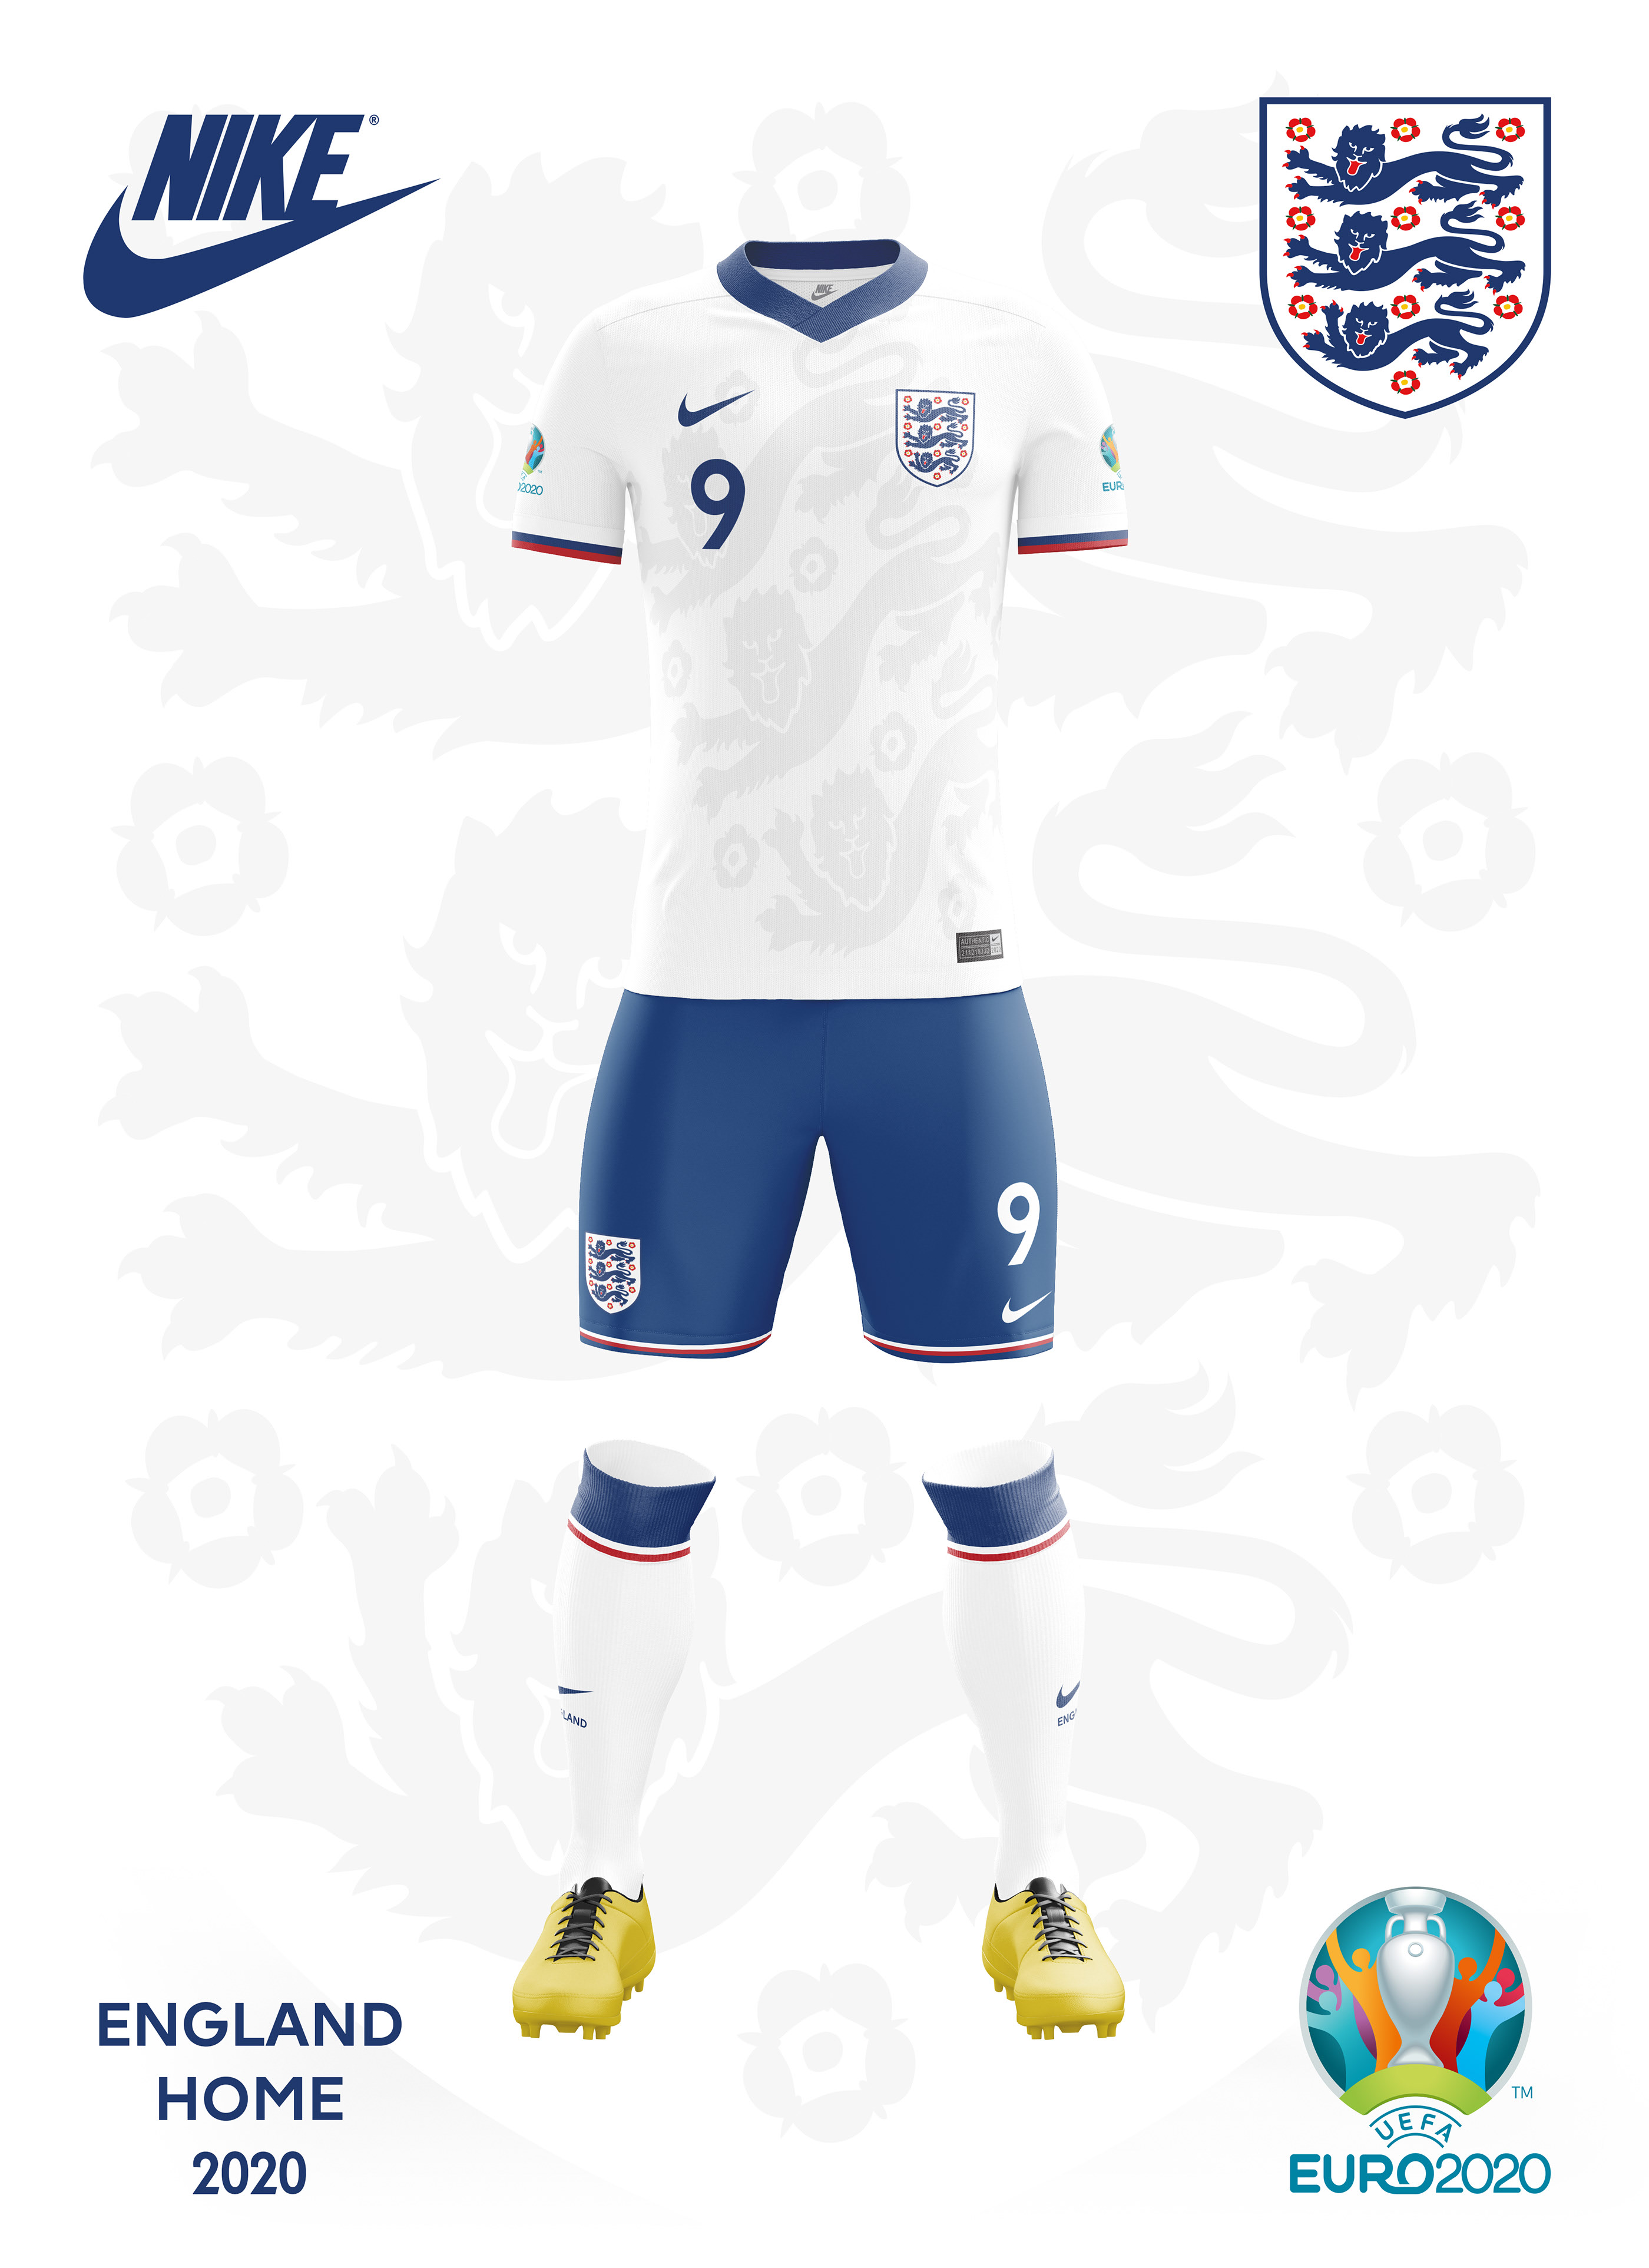 Geneeskunde ik ben verdwaald Draaien England Concept Kit - Euro 2020 - Nike on Behance